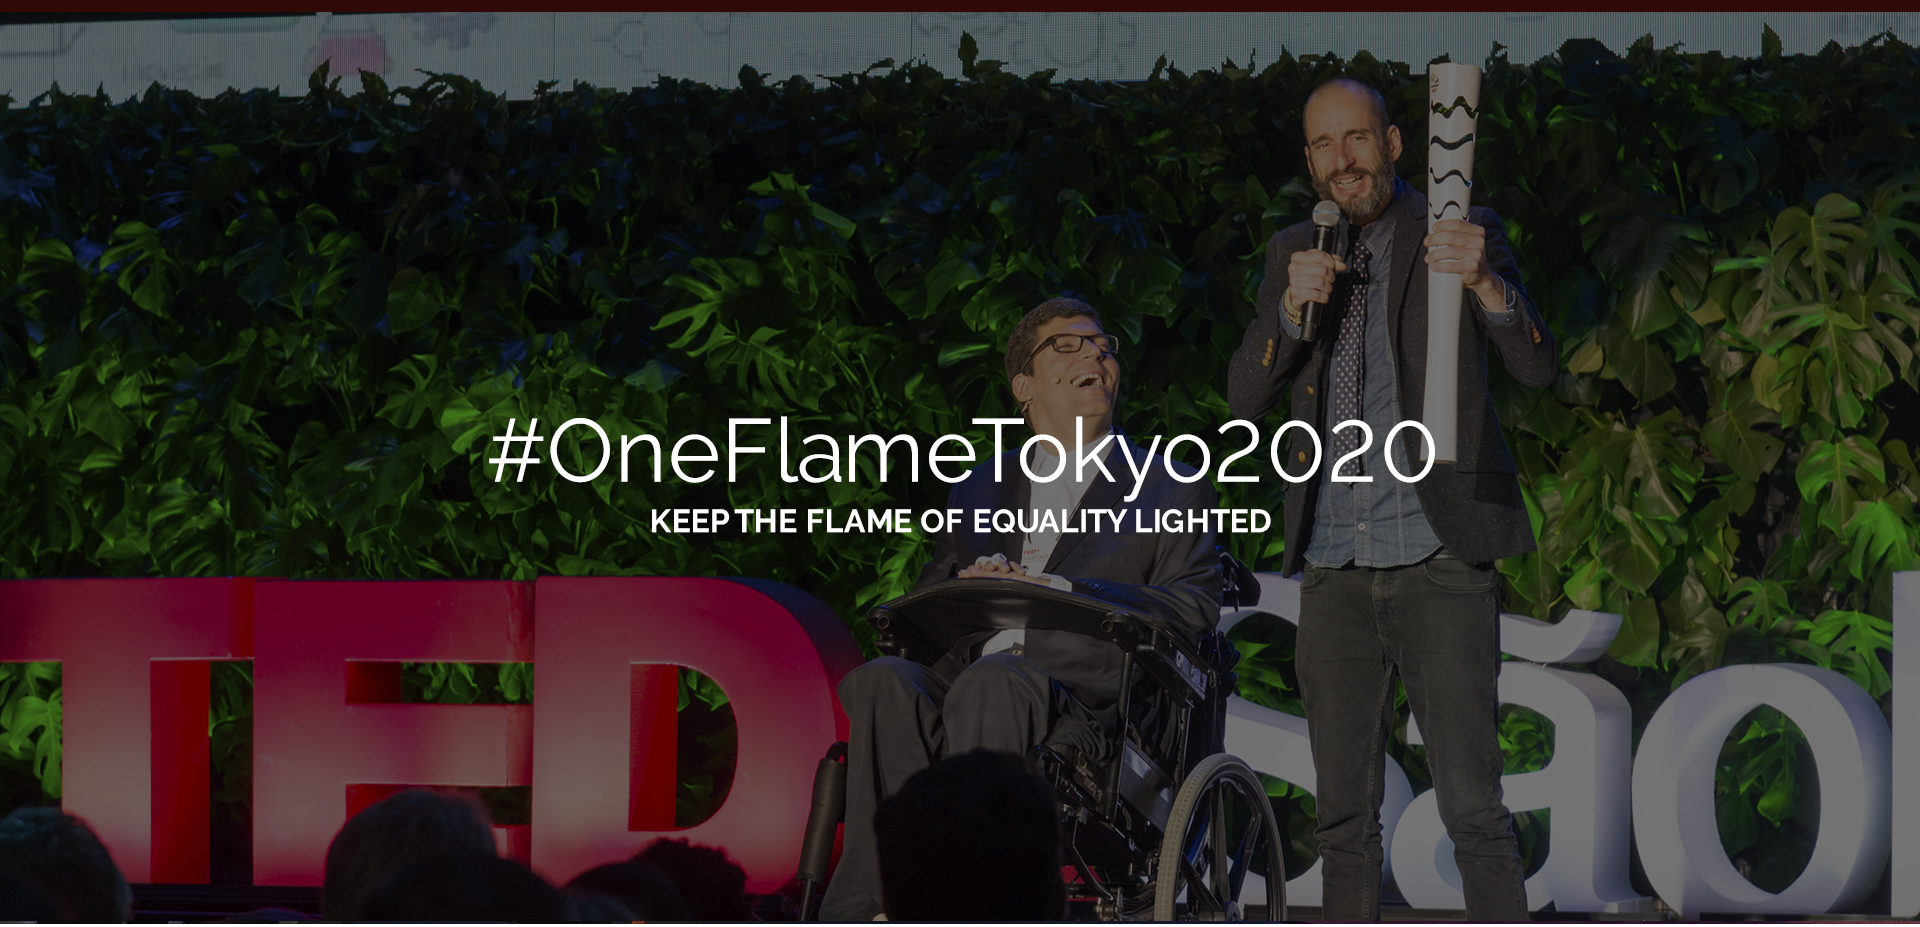 #OneFlameTokyo2020 Mantenha a chama da igualdade acesa. Rodrigo Hübner Mendes sorri, ao lado Cazé Peçanha segura a tocha olímpica. No fundo letreiro do TEDx São Paulo